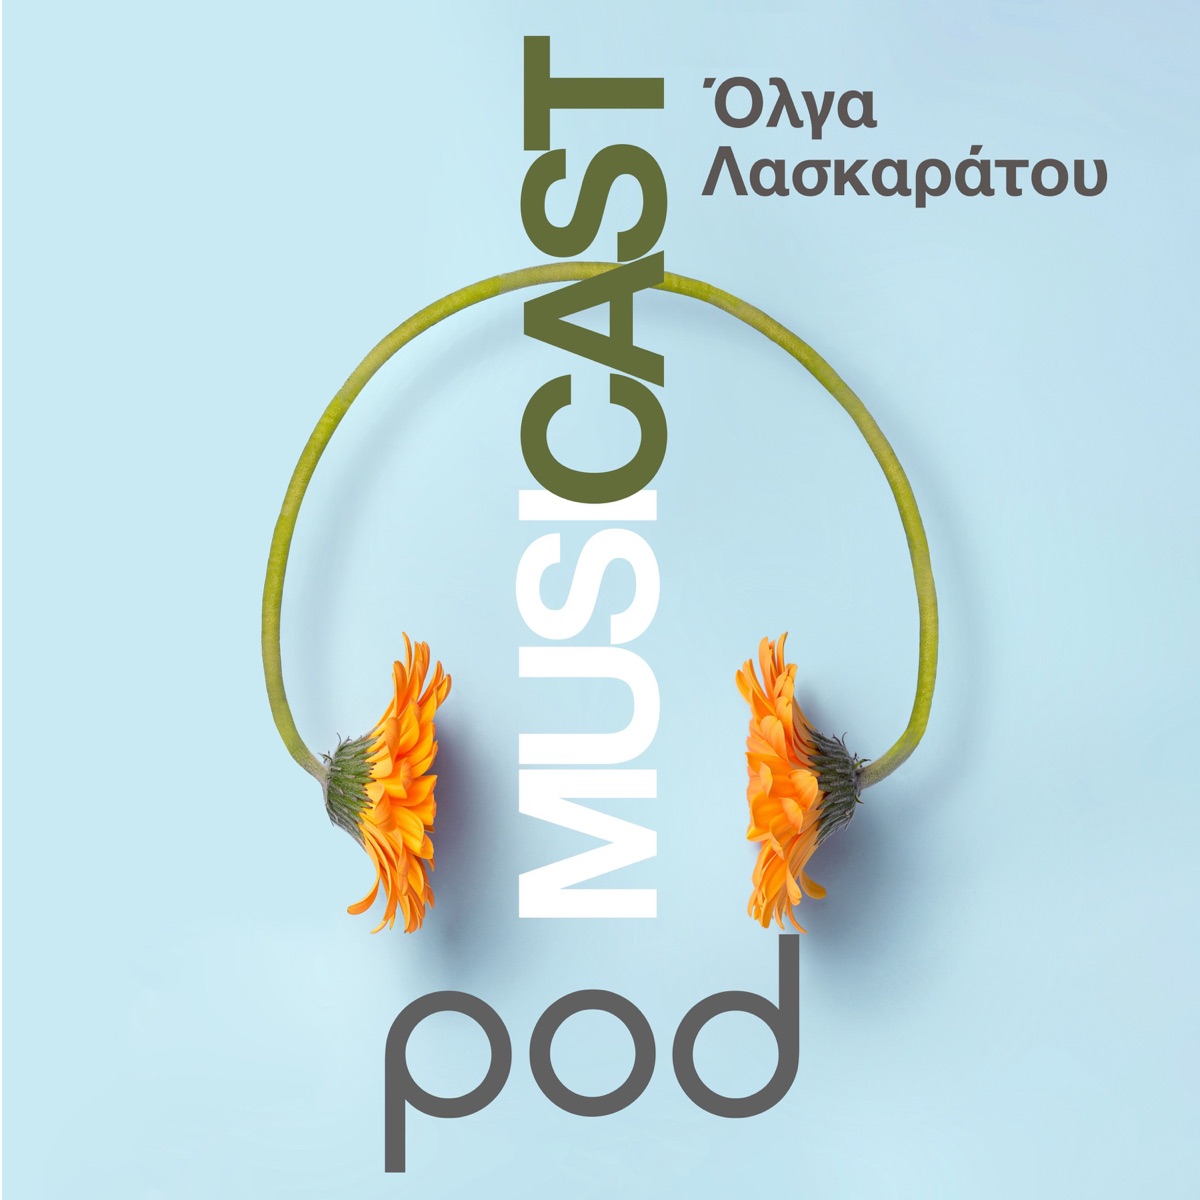 Φύσα το χρυσαλιφούρφουρο, φύσα το την Άνοιξη να φέρεις! ft Σαβίνα Γιαννάτου  – MusiCast, με την Όλγα Λασκαράτου – Podcast – Podtail